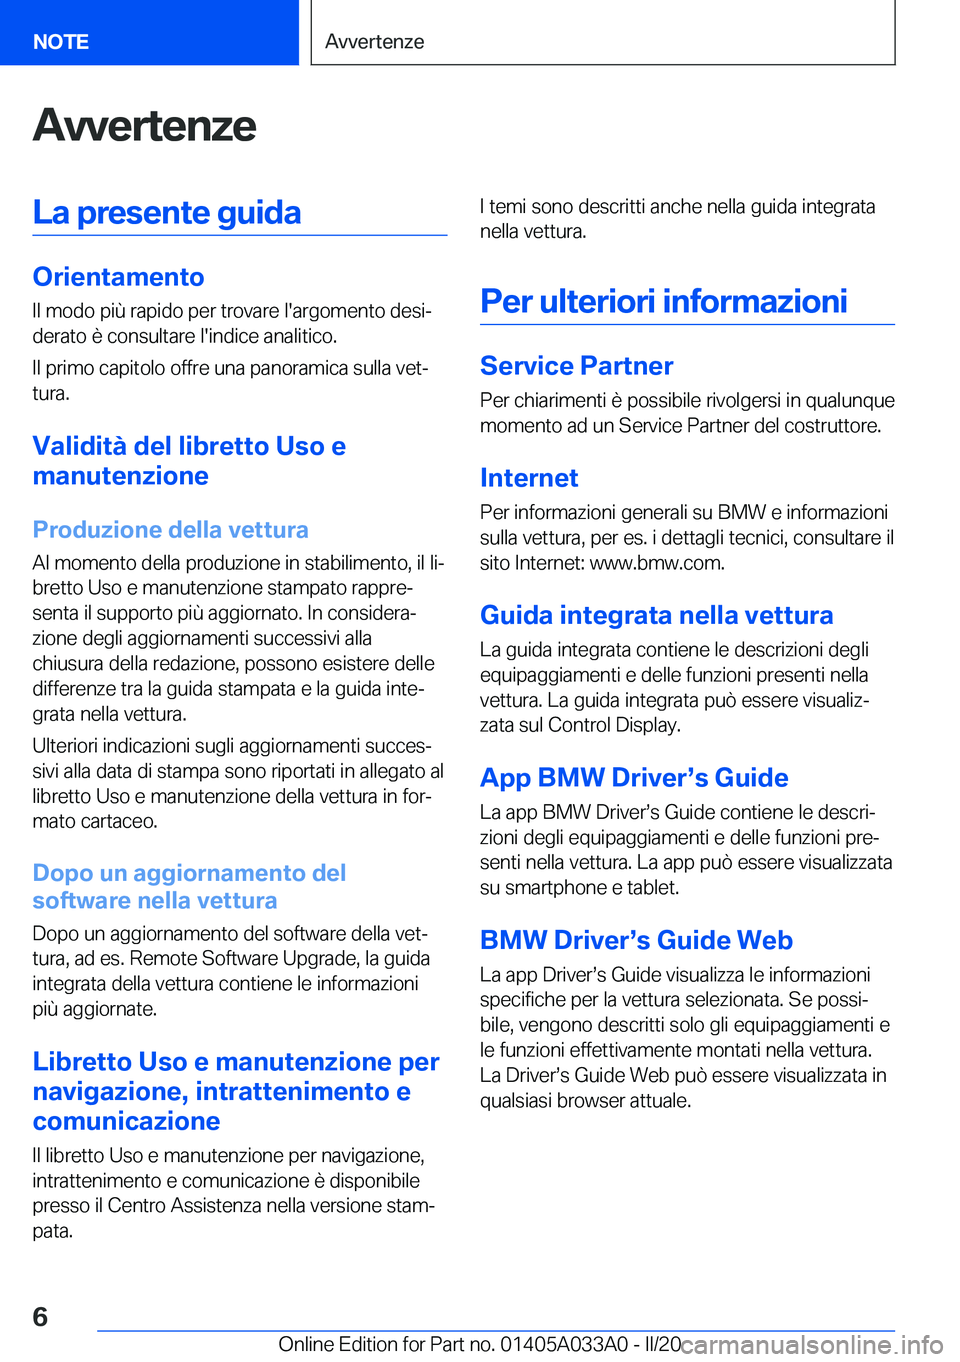 BMW M8 GRAN COUPE 2020  Libretti Di Uso E manutenzione (in Italian) �A�v�v�e�r�t�e�n�z�e�L�a��p�r�e�s�e�n�t�e��g�u�i�d�a
�O�r�i�e�n�t�a�m�e�n�t�o�I�l��m�o�d�o��p�i�